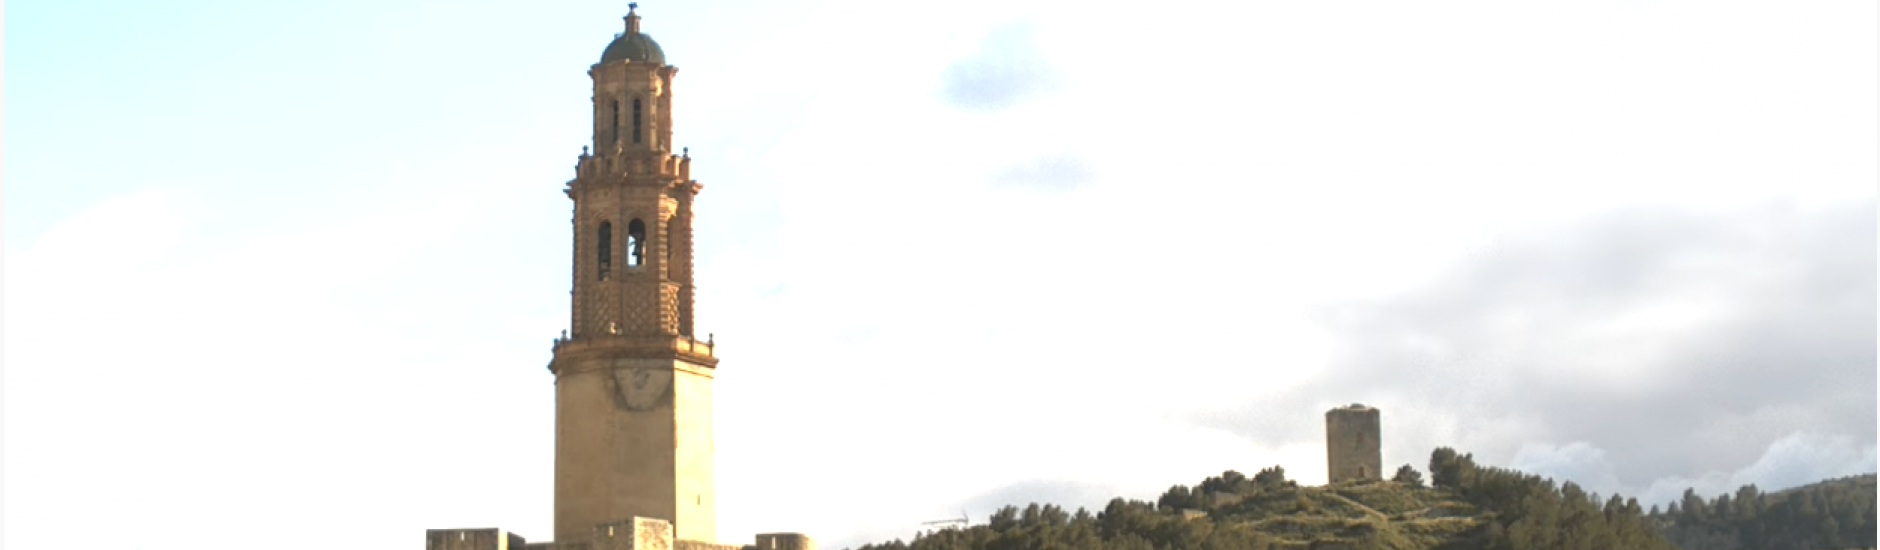 Der Turm von Jérica